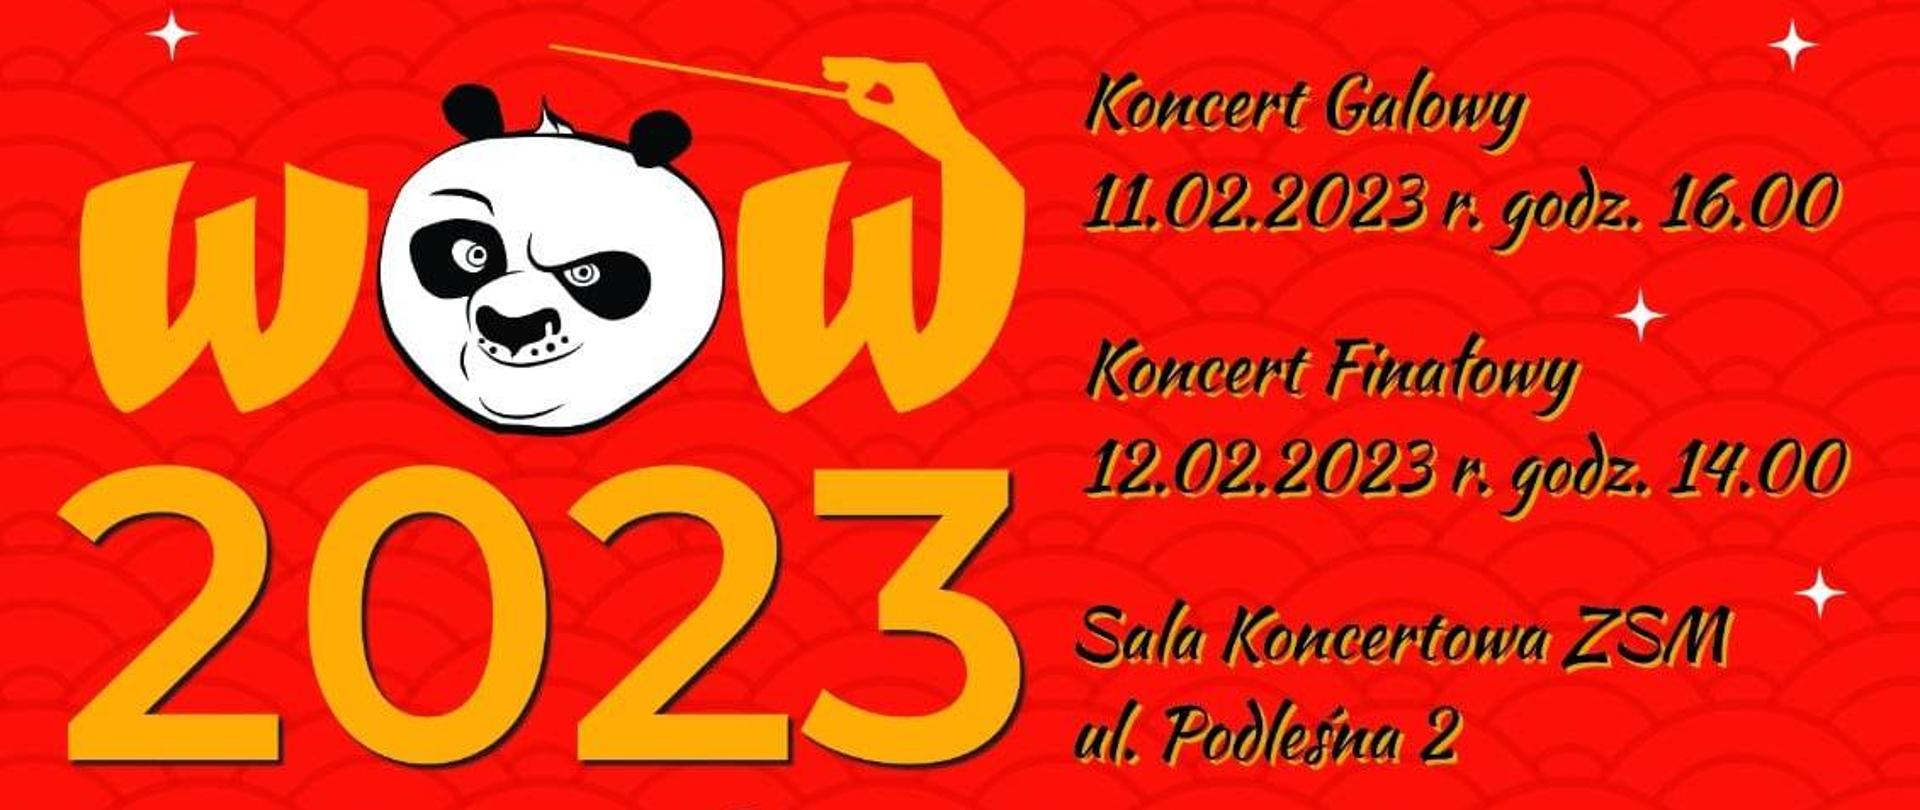 Plakat reklamujący wydarzenie zimowych warsztatów orkiestrowych WOW 2023 w kolorze czerwonym ze szczegółami wydarzenia.